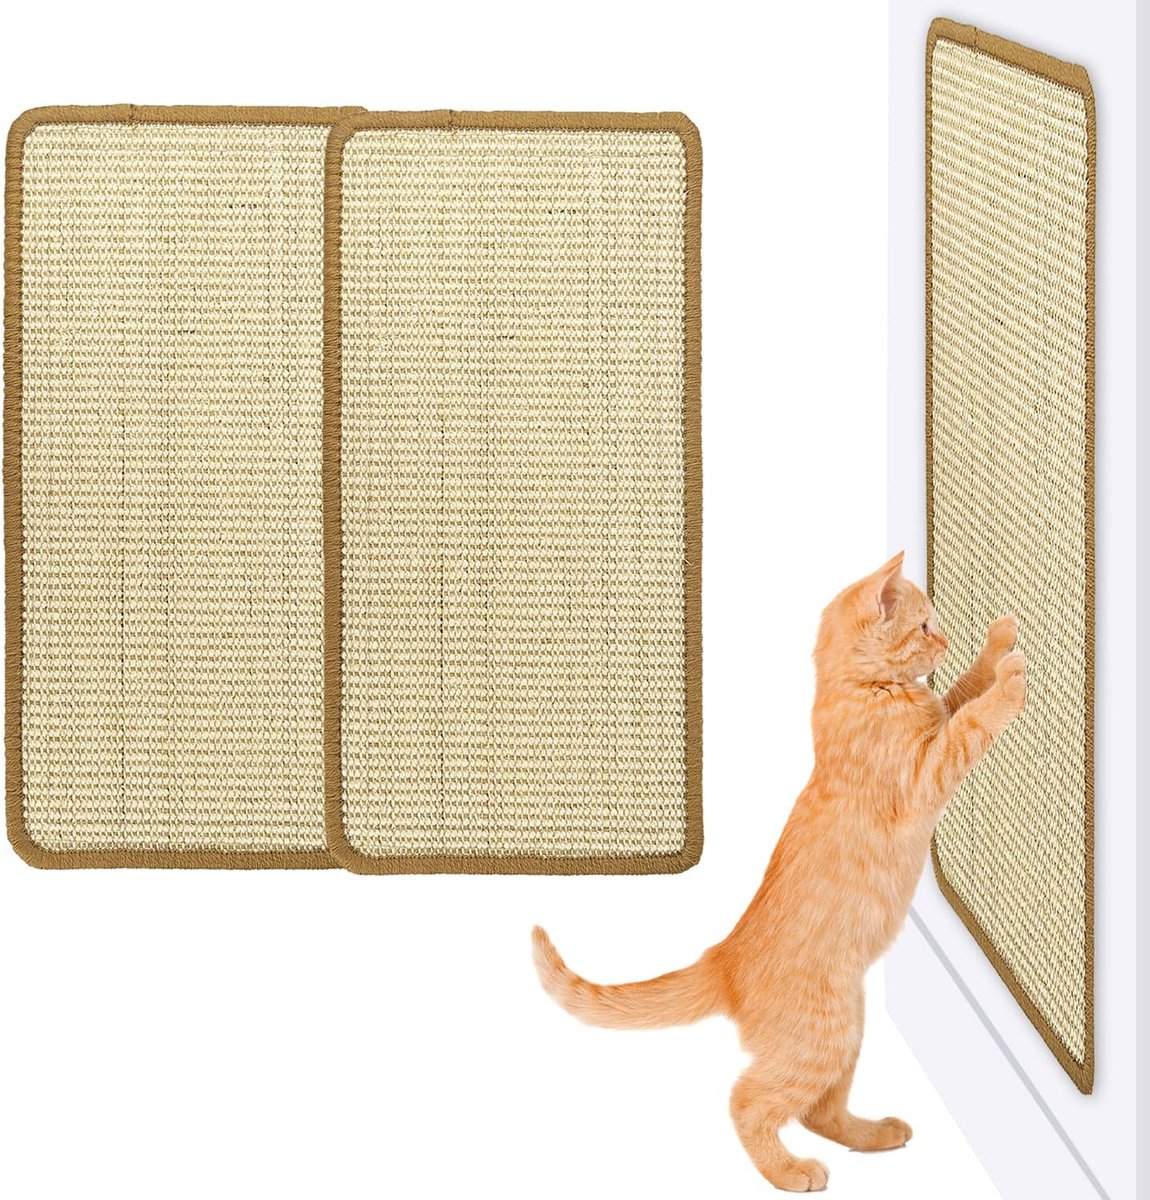 Kattenkrabmat Sisal-tapijt Kattenkrab-tapijt 2 stuks Katten-krabmat Krabplanken Sisal-mat ter bescherming van tapijten en banken (50 x 25 cm)